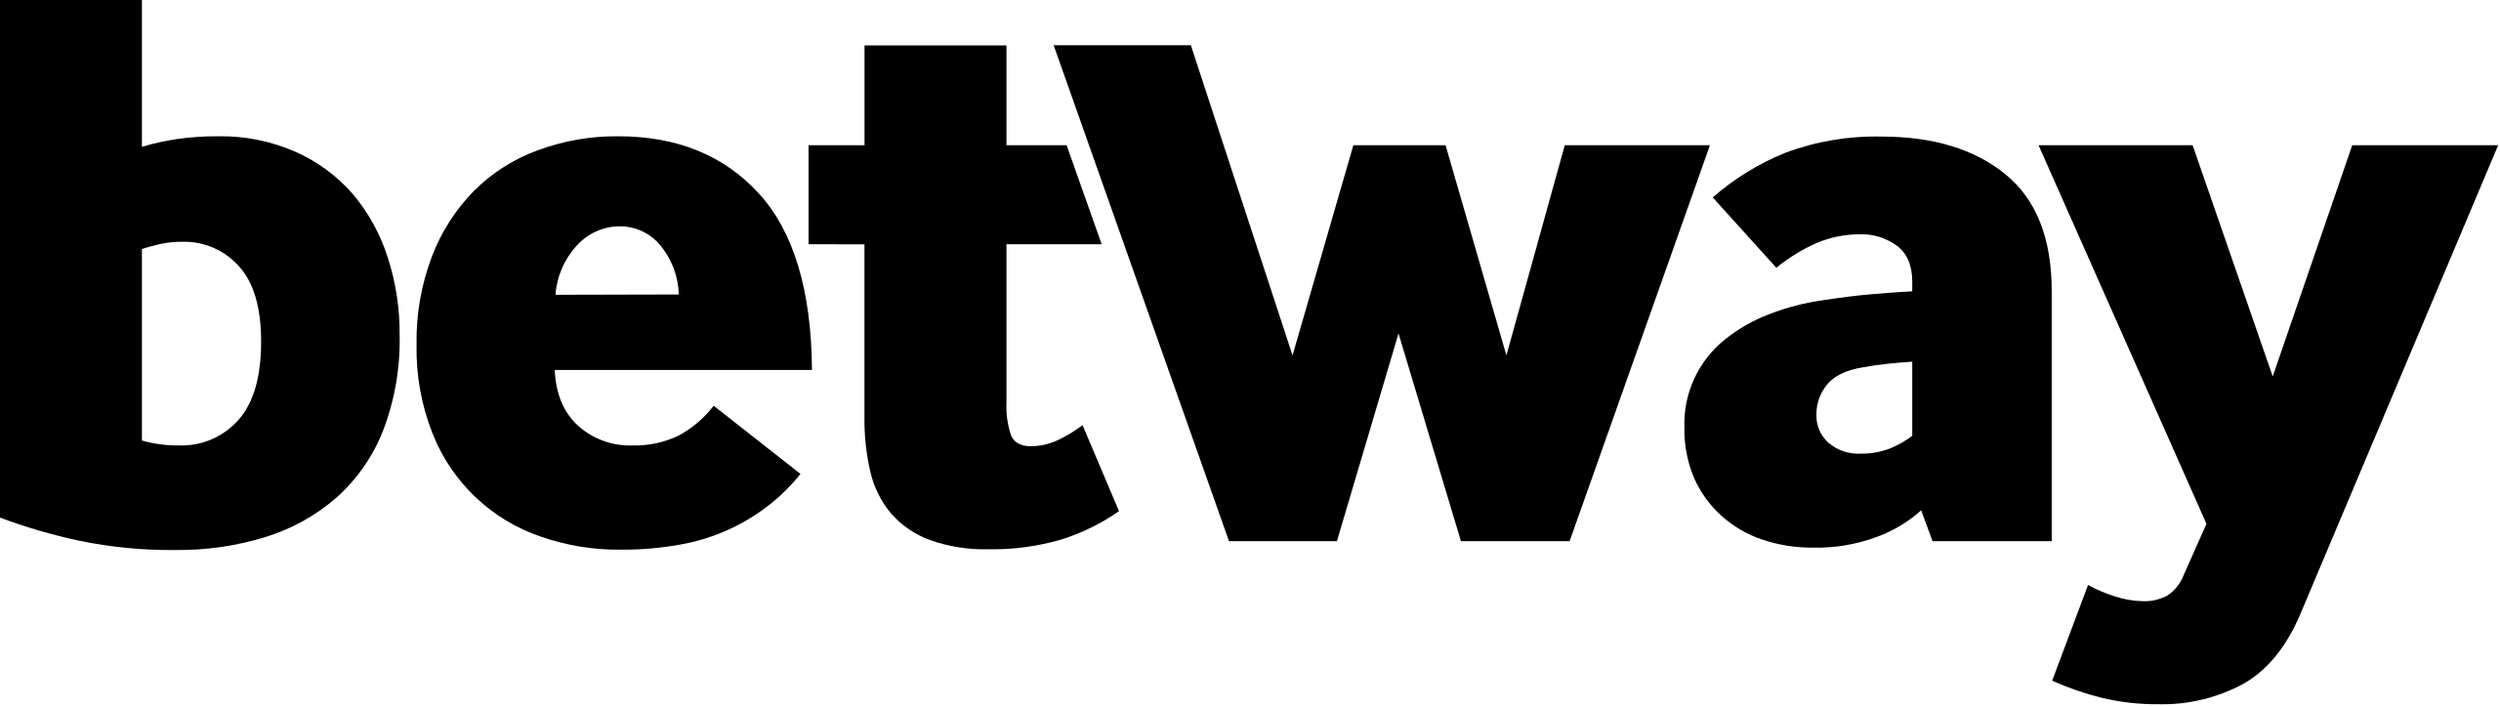 Betway_Logo_(black).svg.png